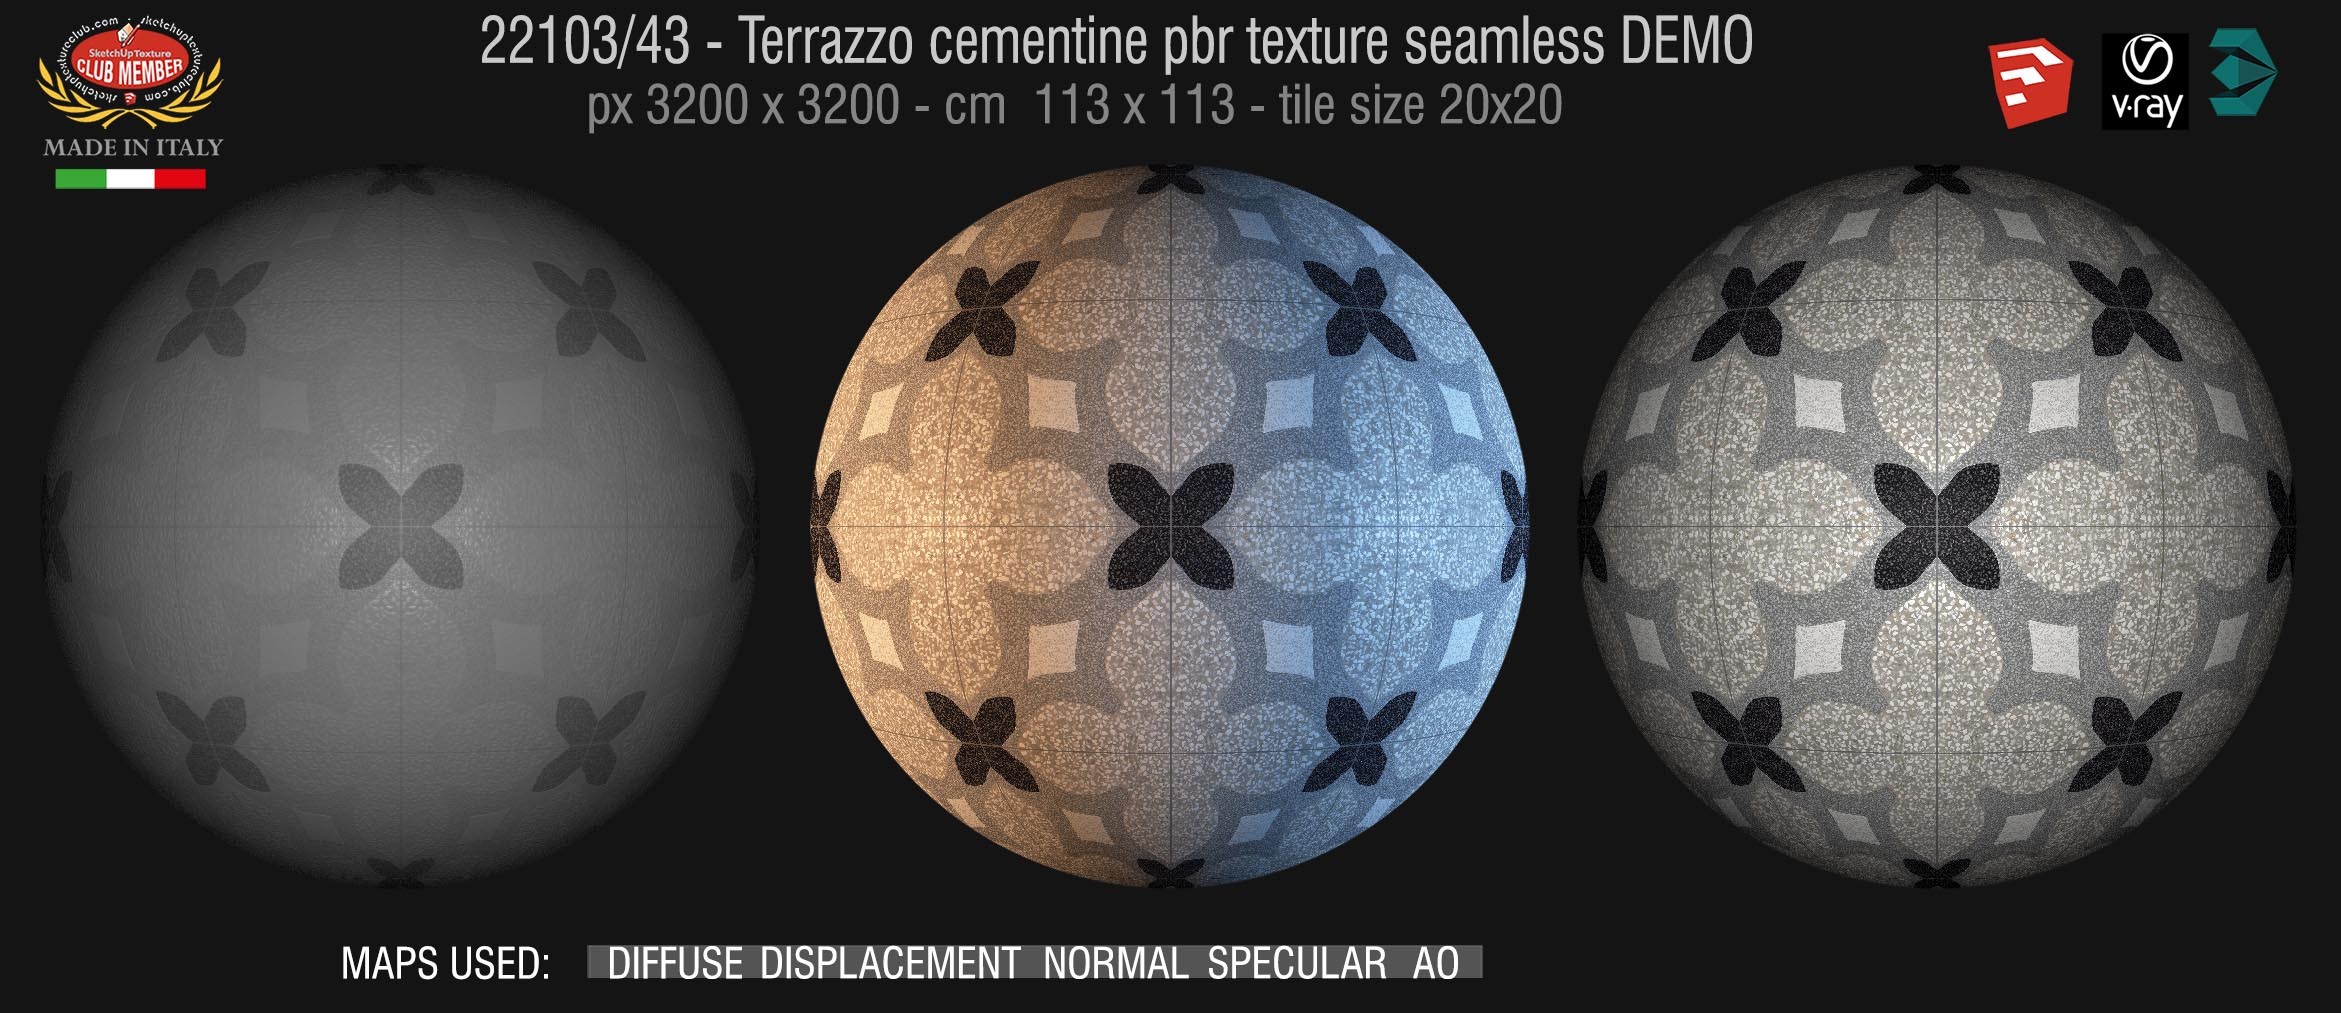 22103_ terrazzo floor cementine style pbr texture seamless DEMO / D_Segni Scaglie 20x20 size by Marazzi